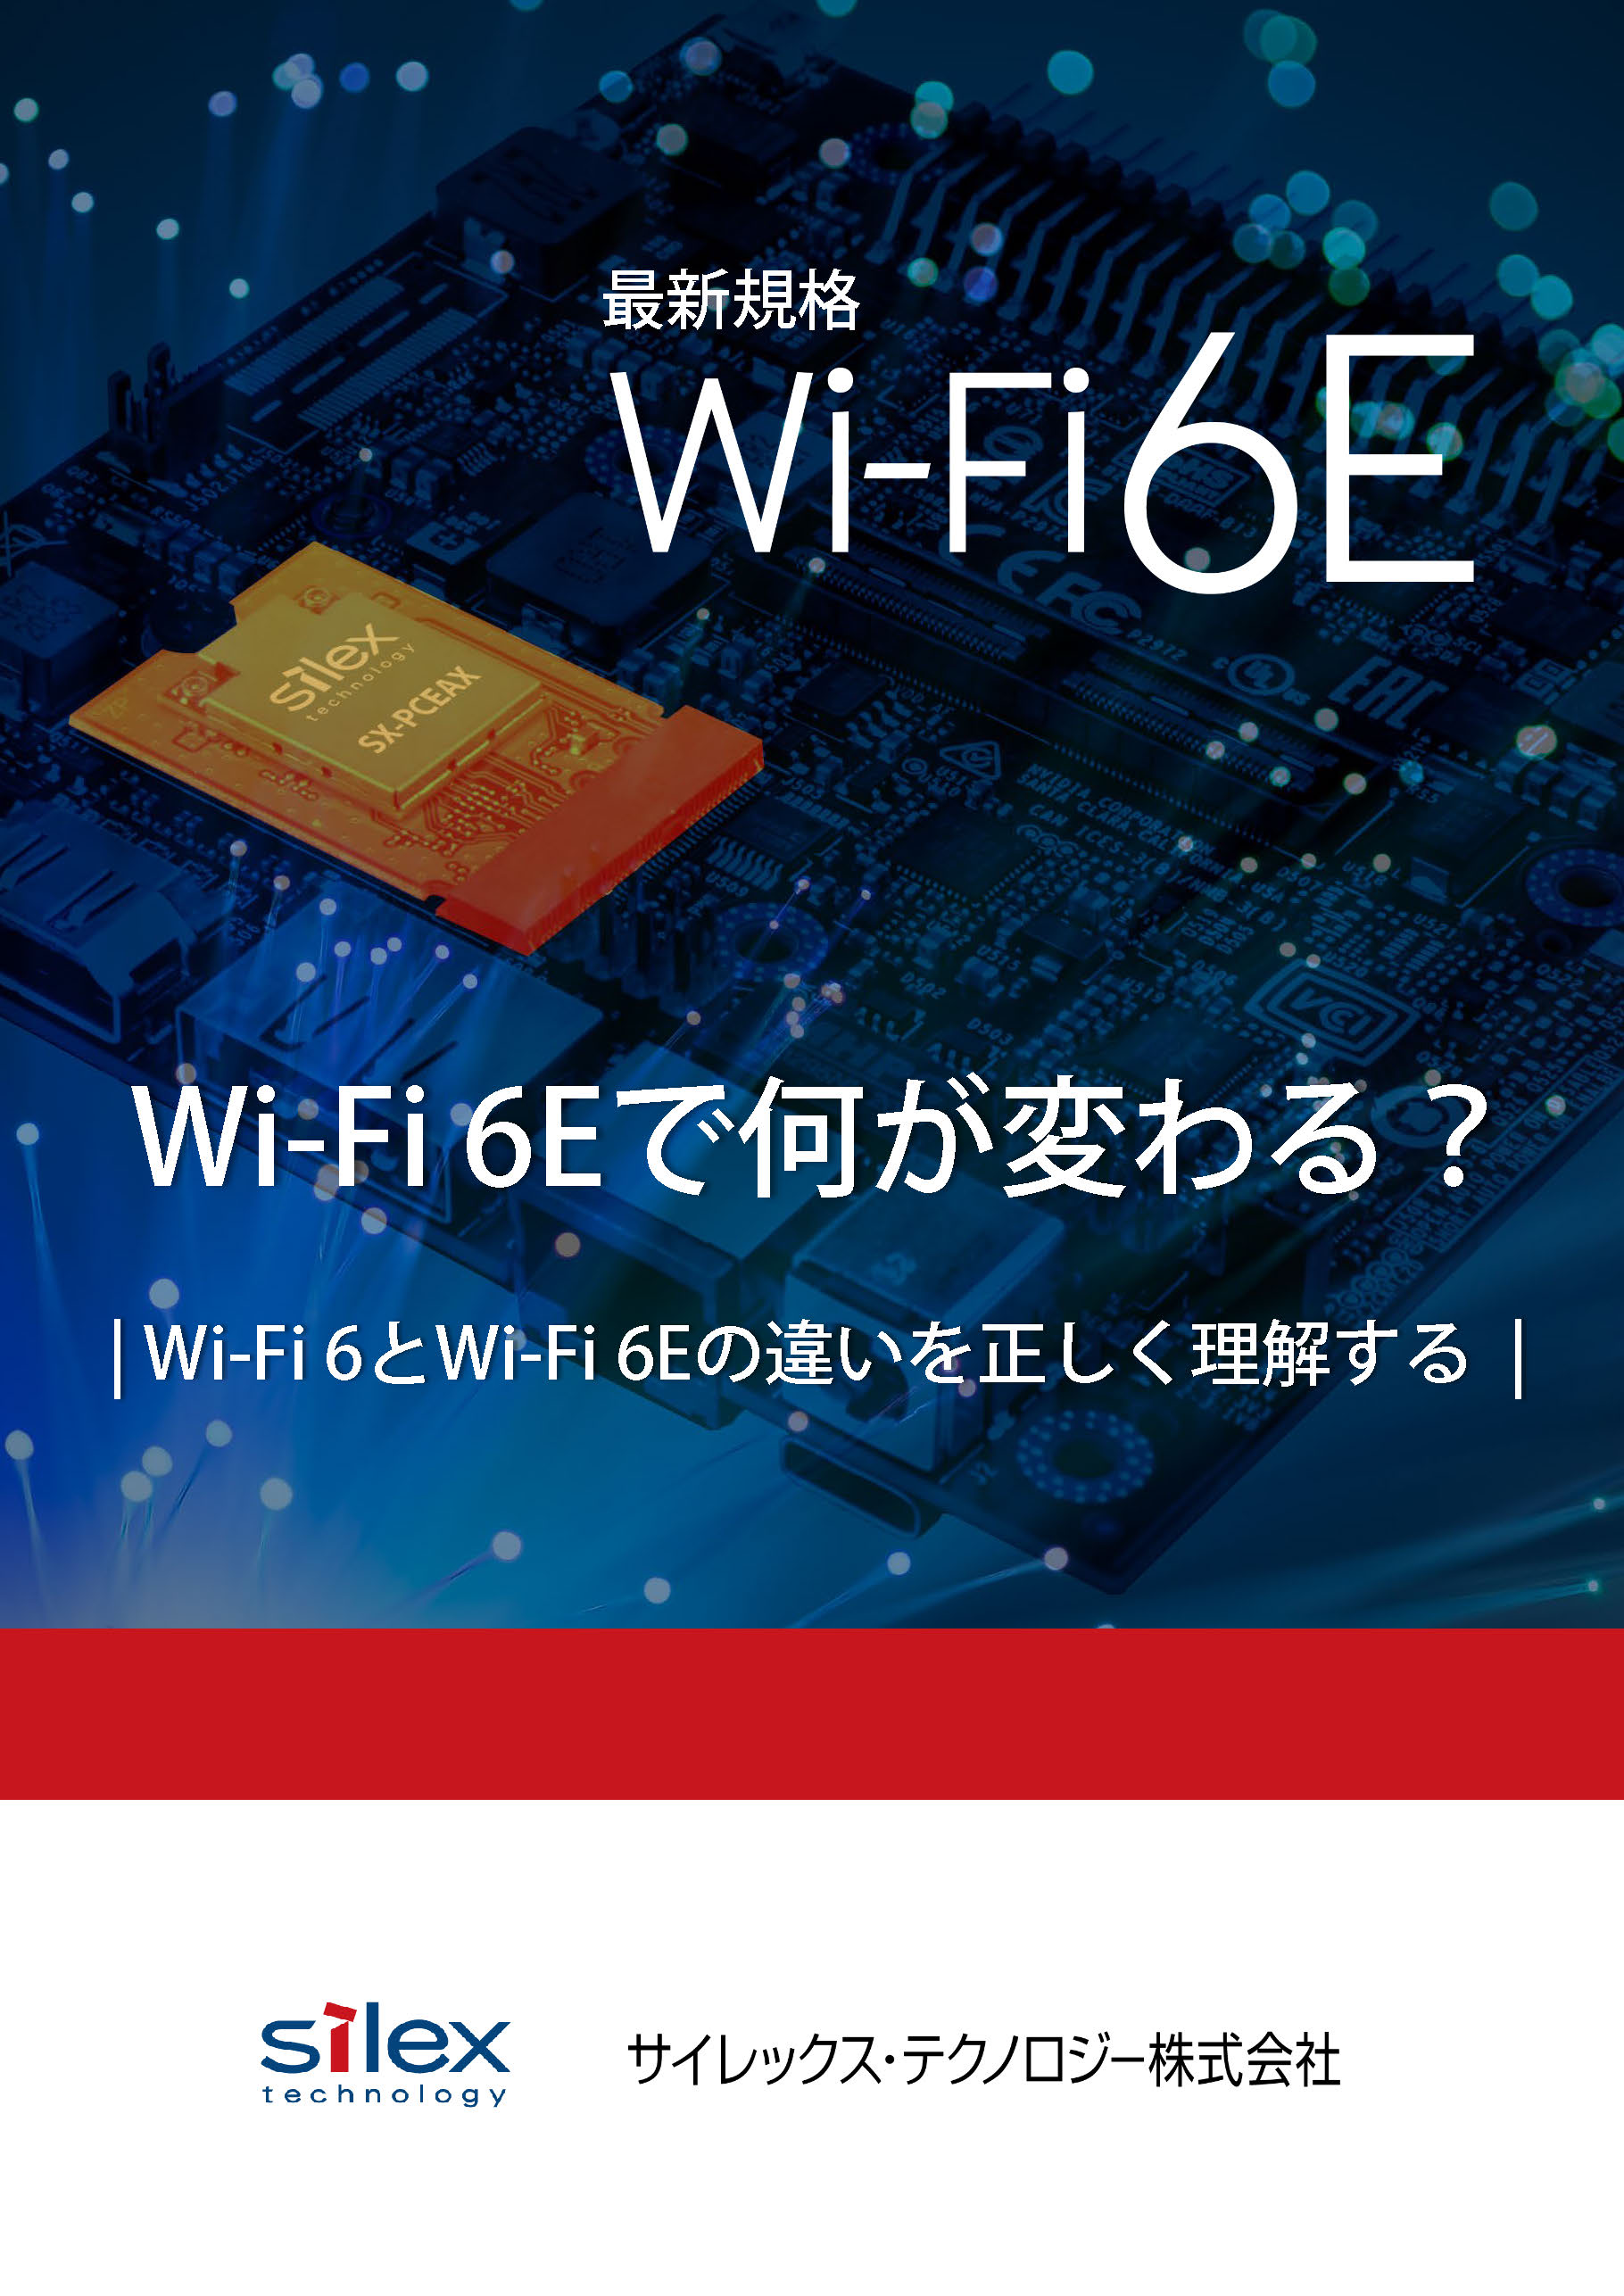 Wi-Fi 6Eで何が変わる？-Wi-Fi 6とWi-Fi 6Eの違いを正しく理解する-